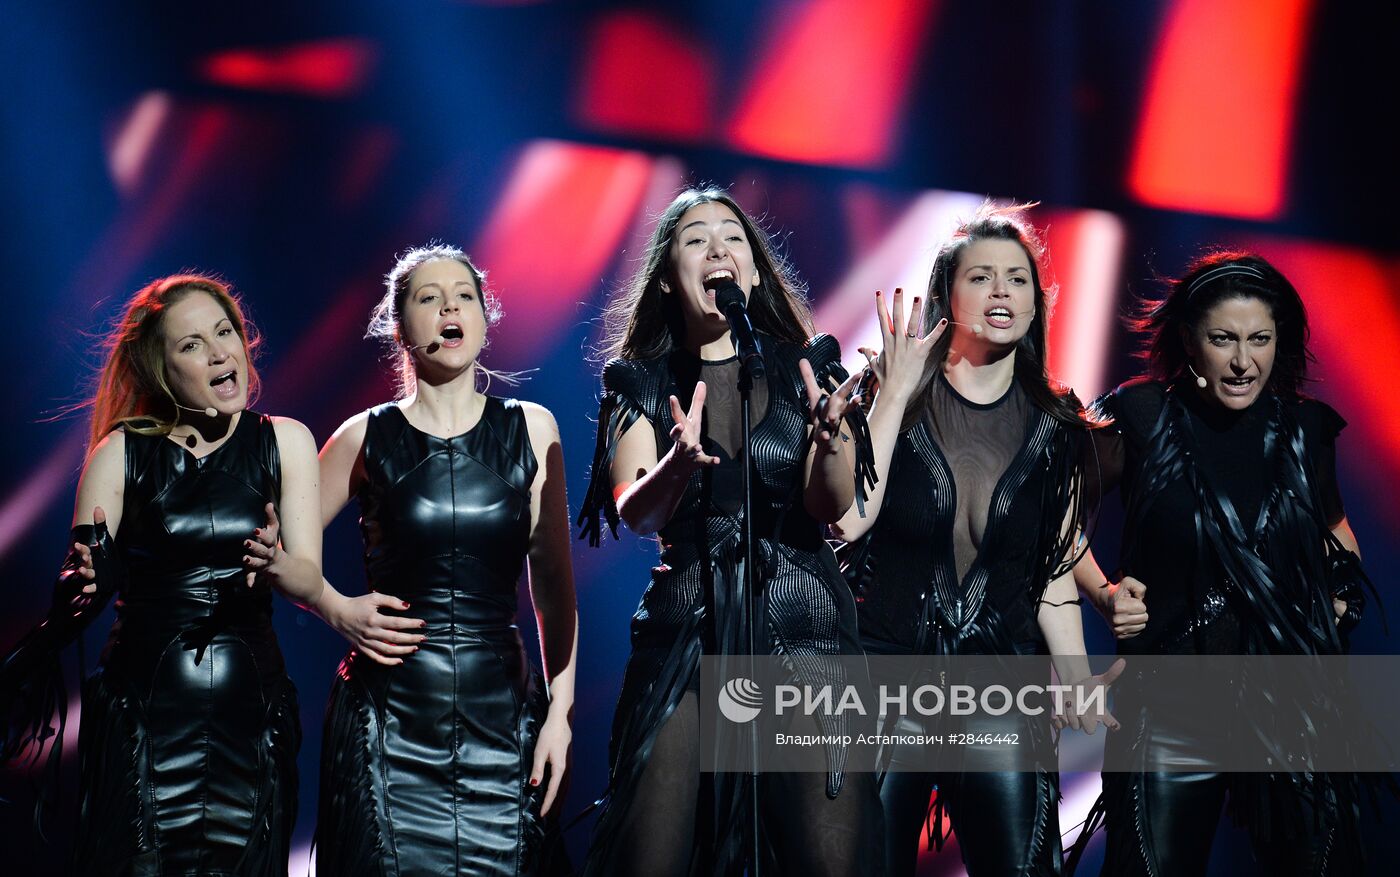 Генеральная репетиция финала международного конкурса "Евровидение-2016"